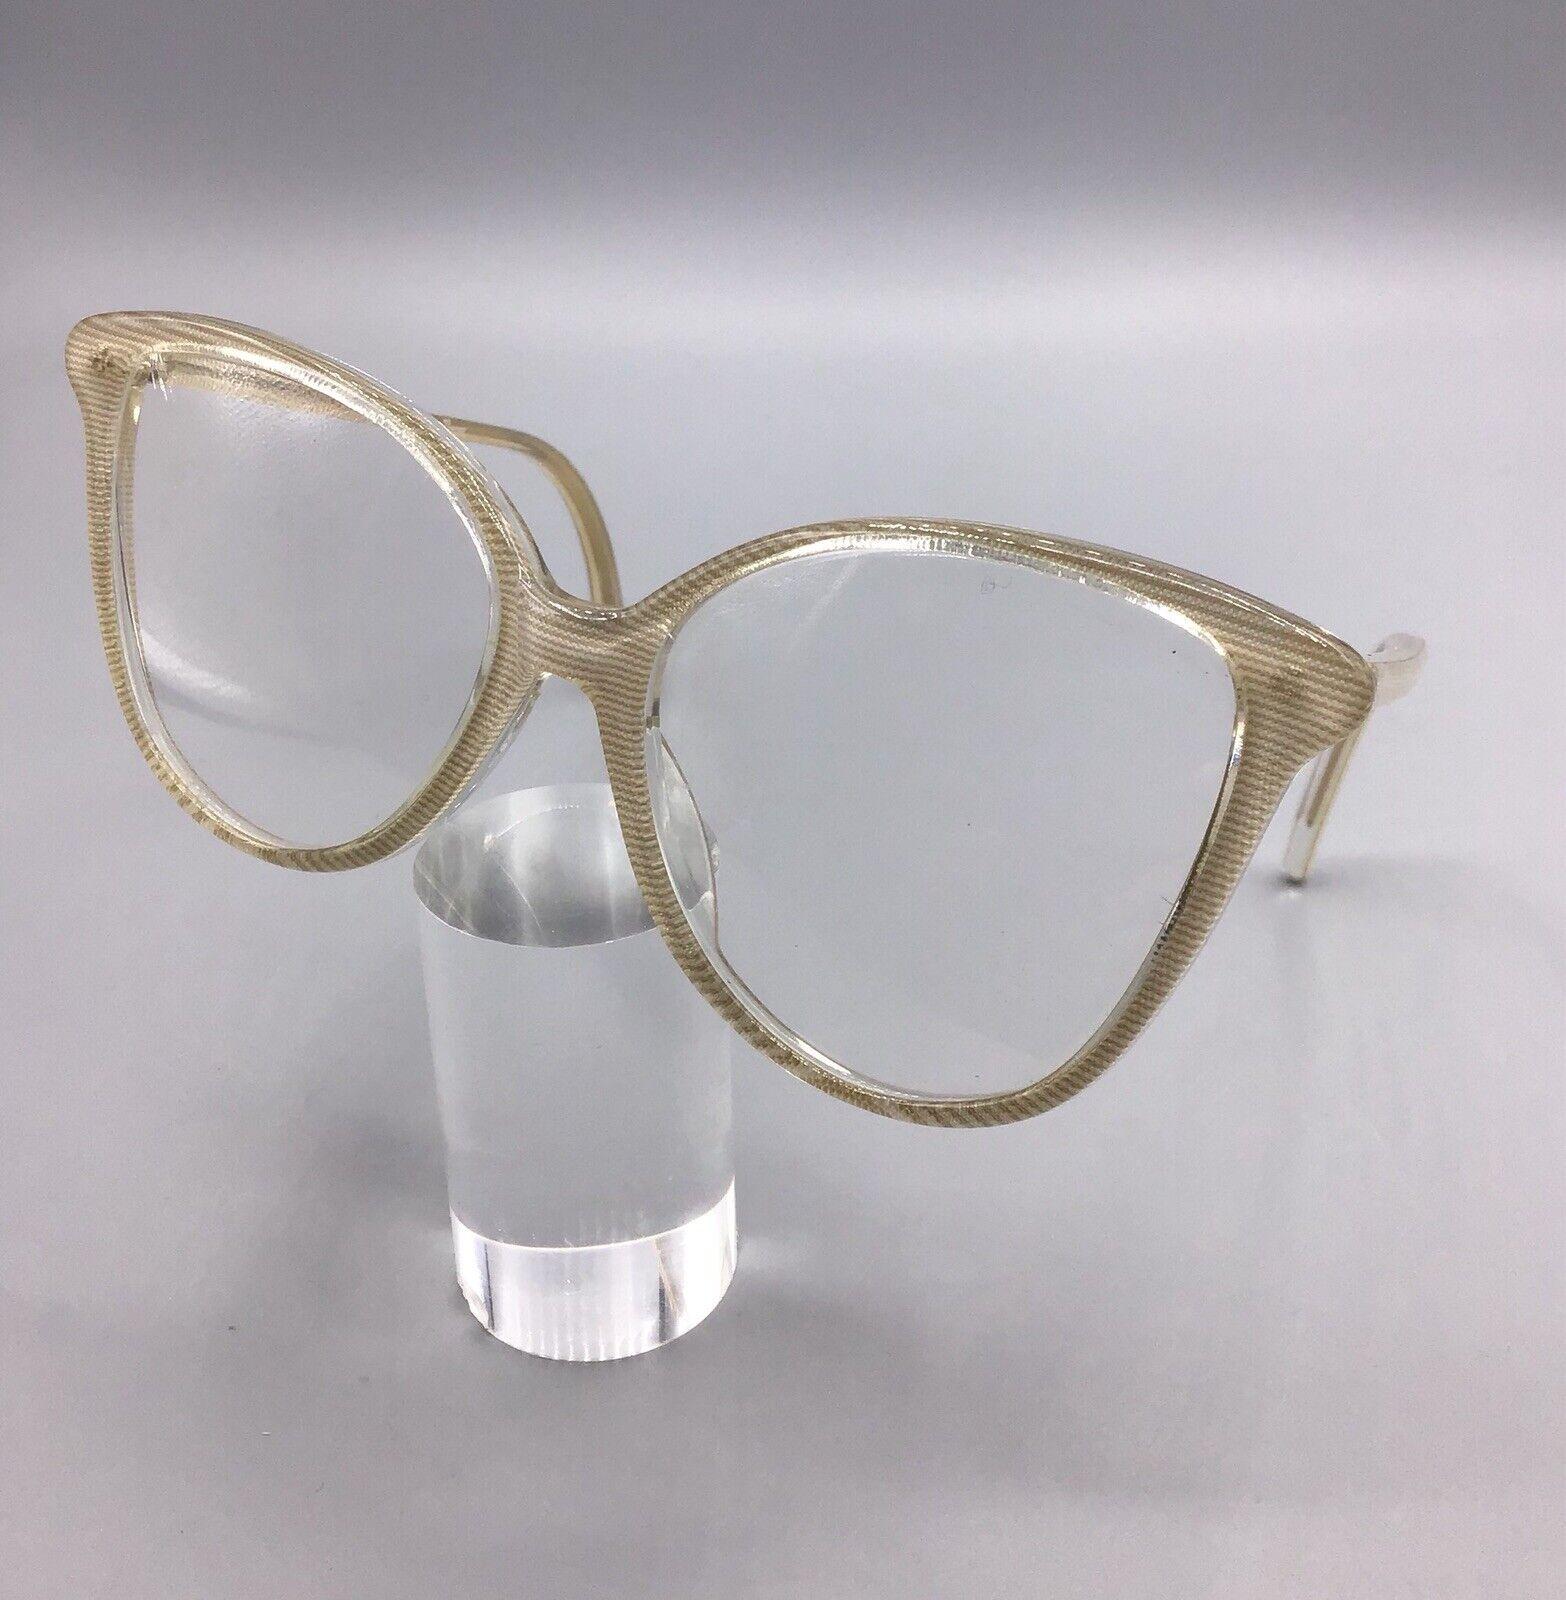 Metalflex Alazer m/152 occhiale vintage eyewear frame brillen lunettes